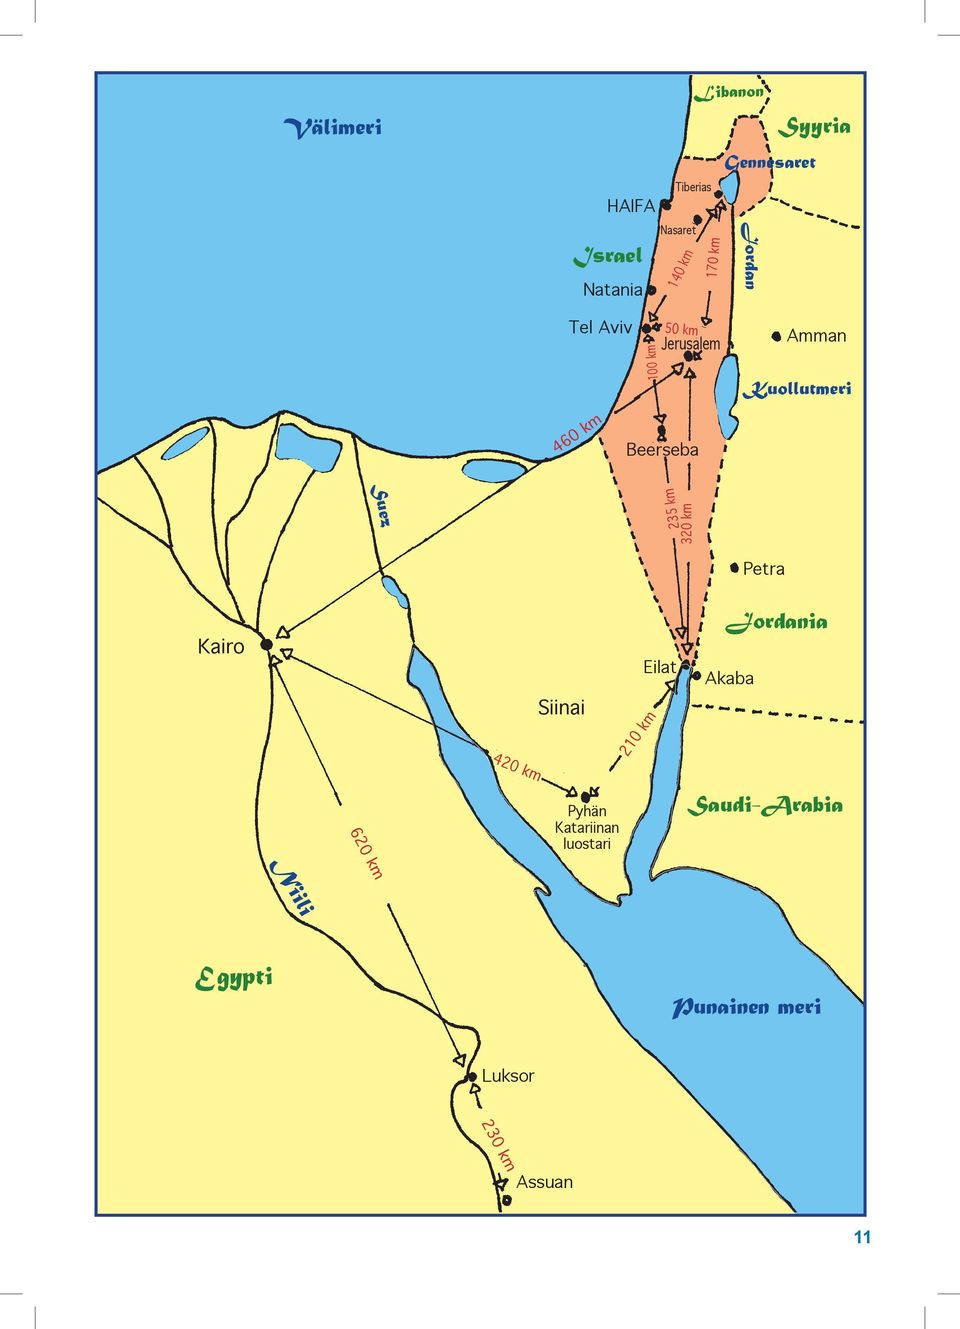 Beerseba Suez 235 km 320 km Petra Kairo 420 km Siinai Eilat 210 km Jordania Akaba